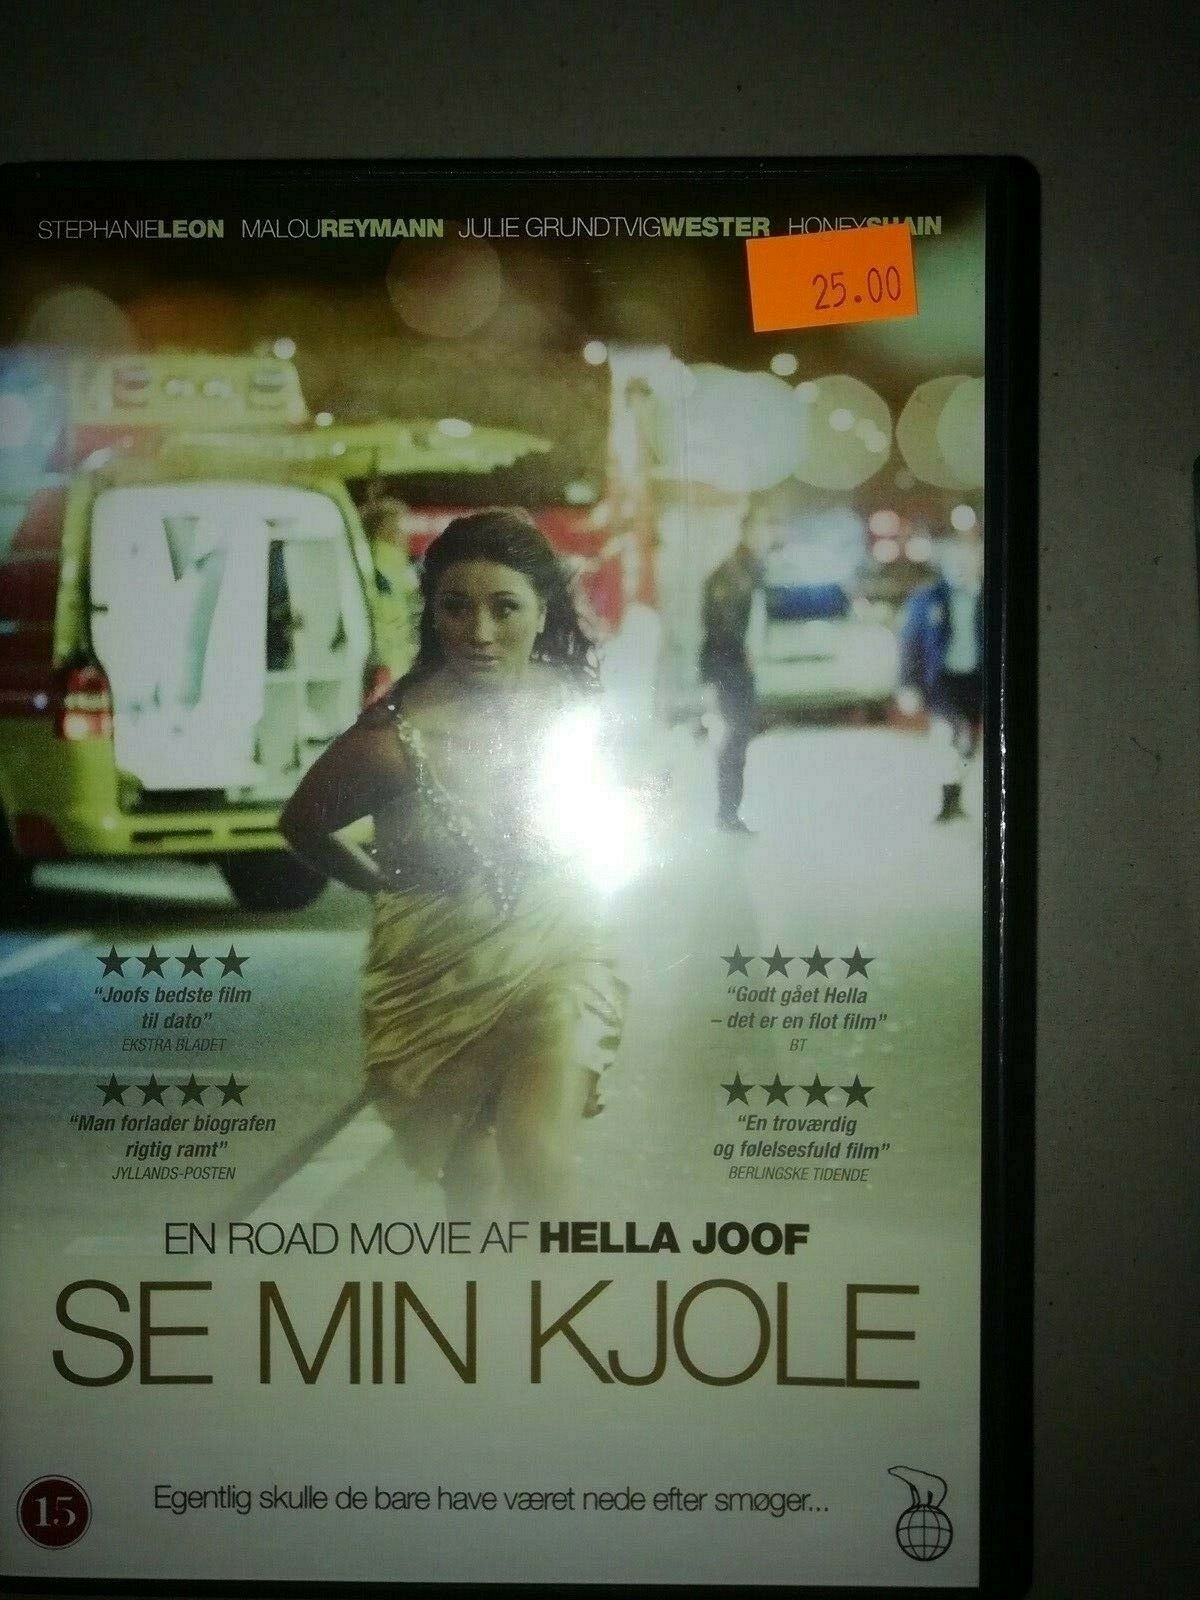 Se min kjole DVD, drama dba.dk Køb Salg af Nyt og Brugt